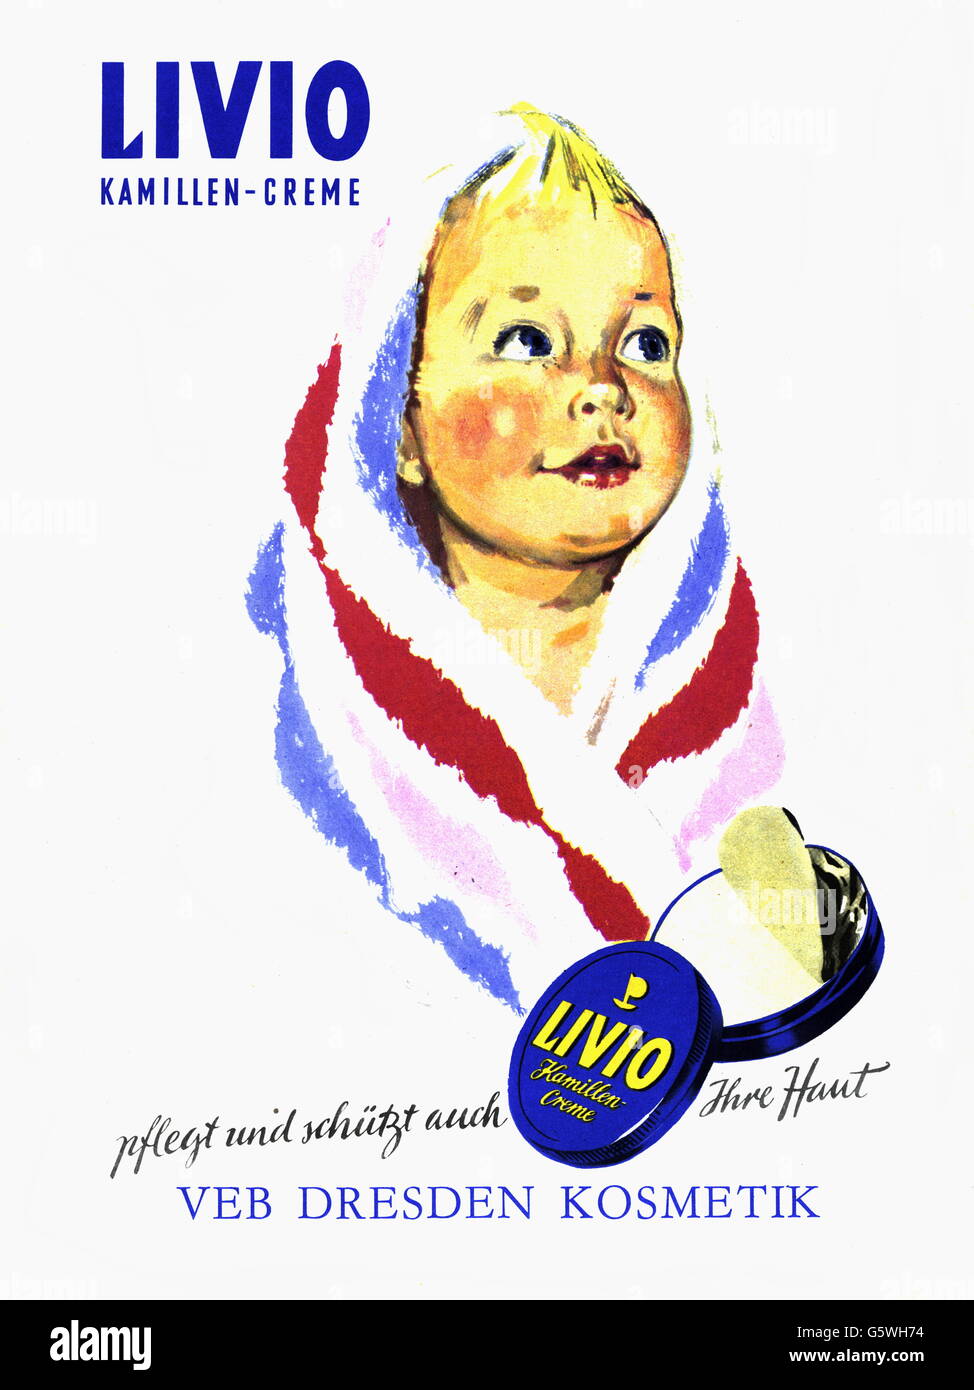 Publicité, cosmétiques, crème camomille 'Livio', producteur: VEB Dresden Kosmetik, publicité, années 1970, droits additionnels-Clearences-non disponible Banque D'Images